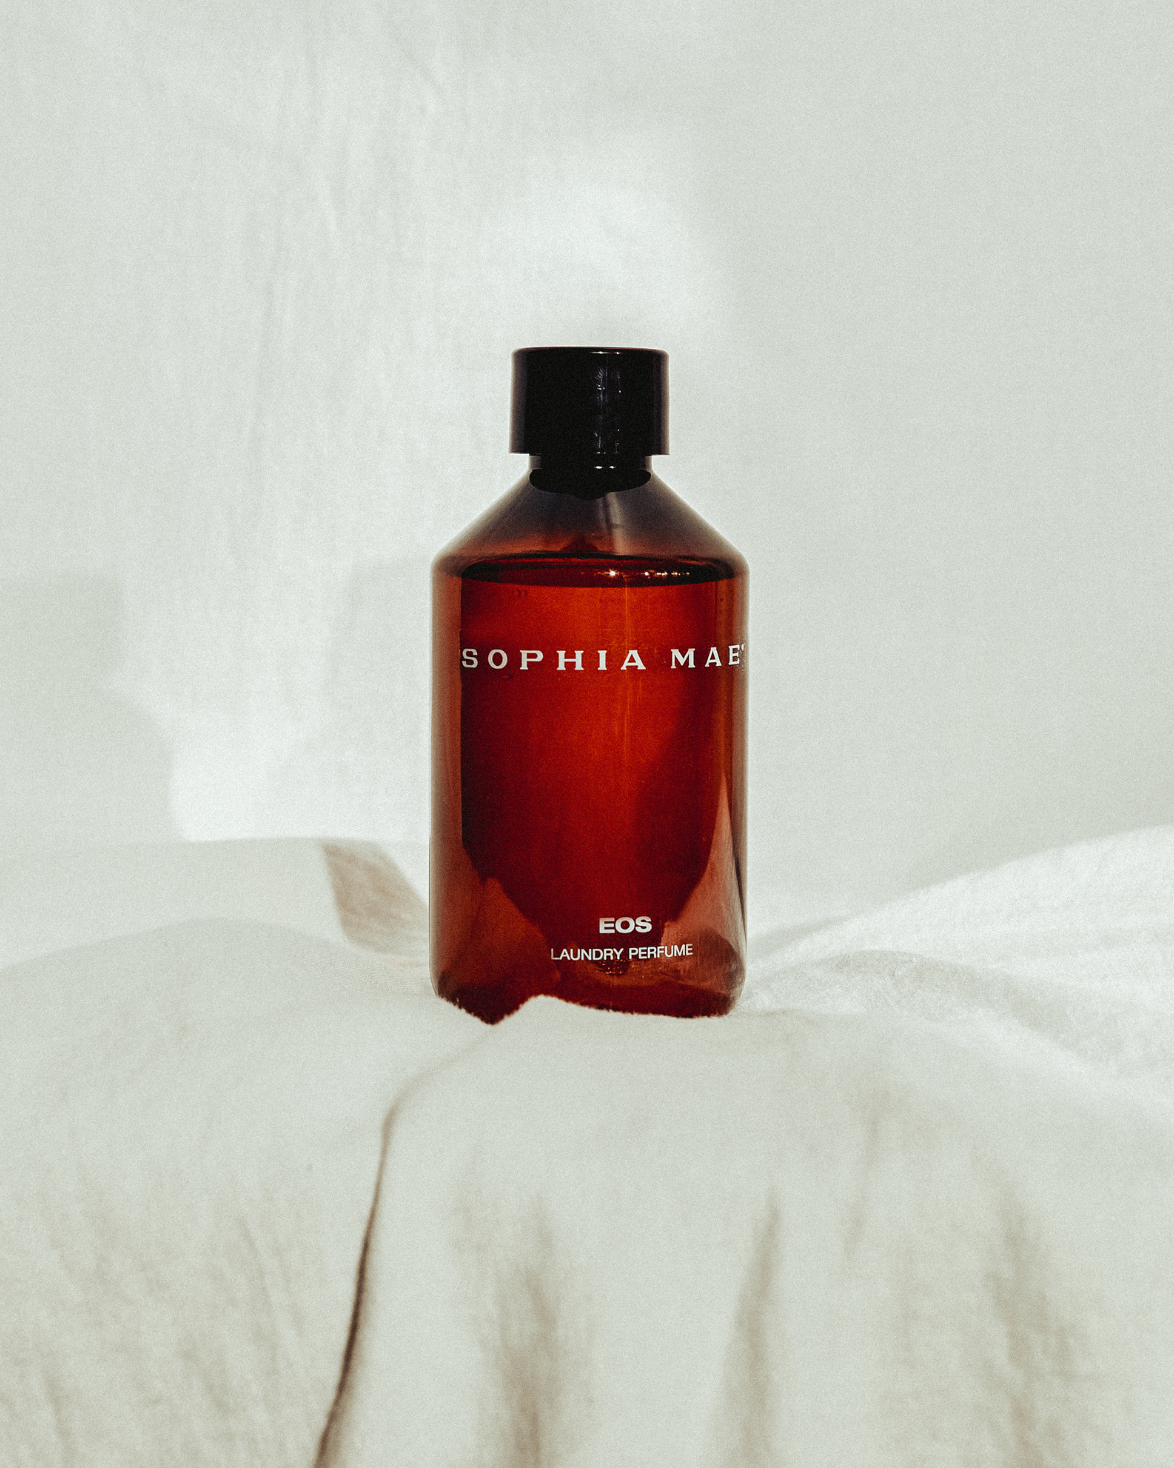 Sophia Mae Laundry perfume